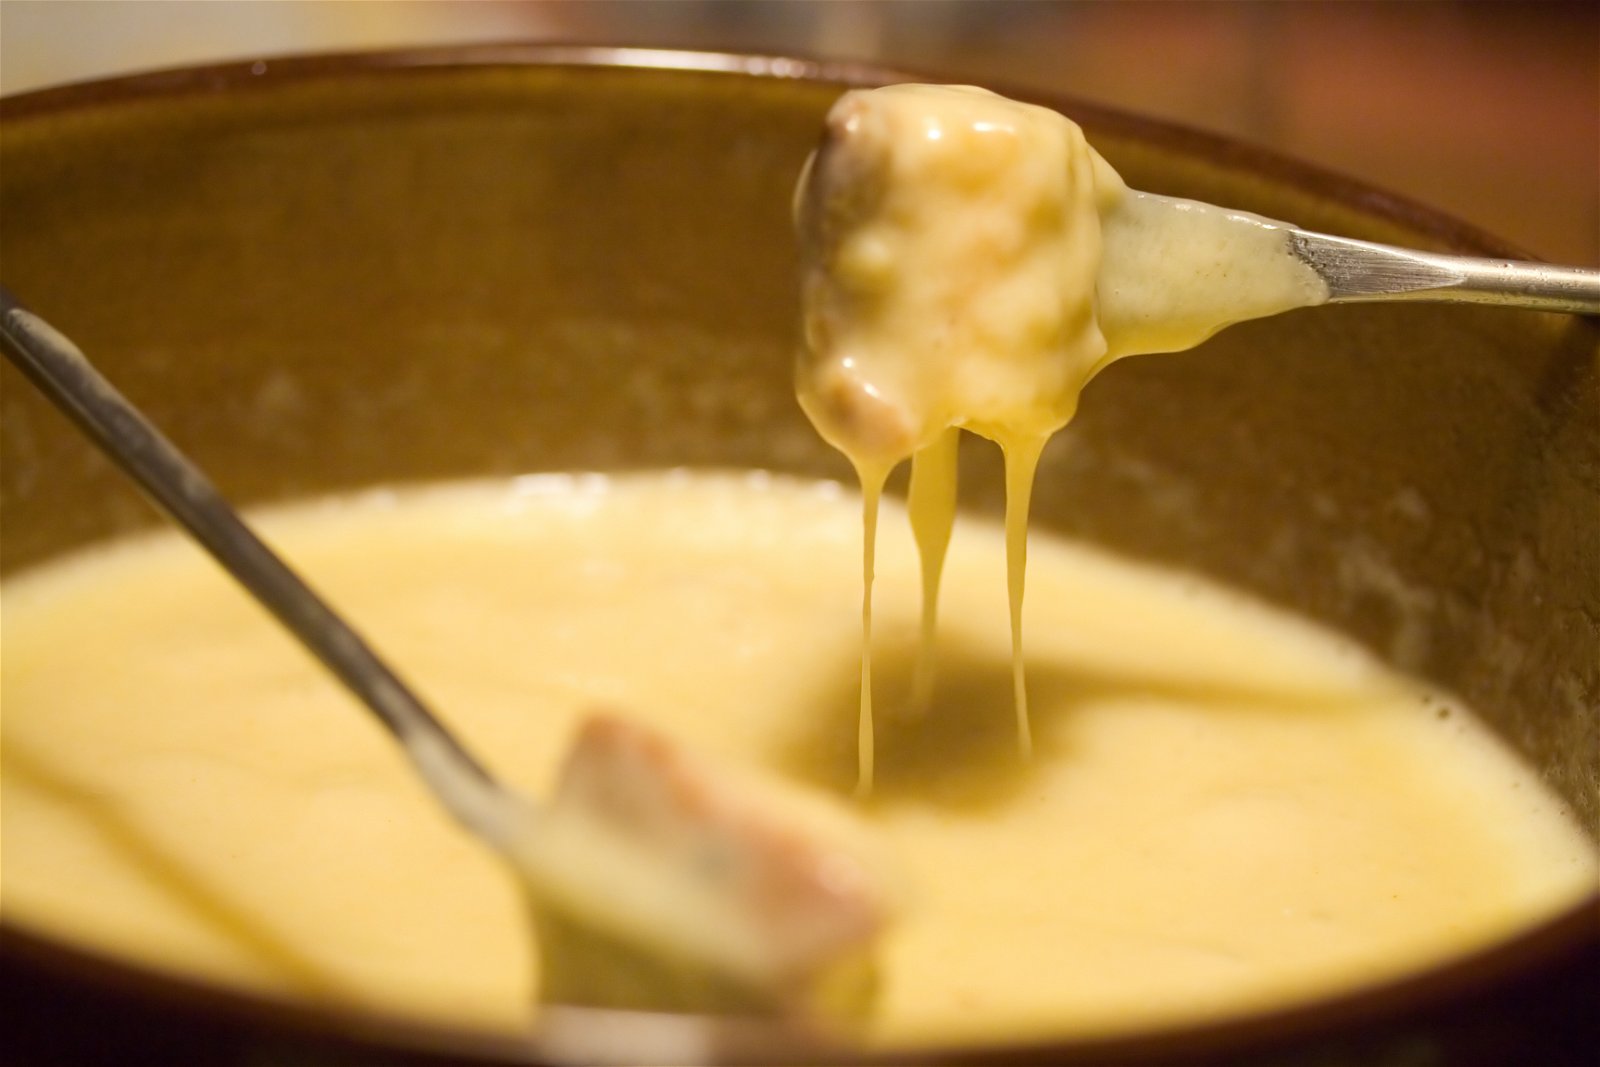 Swiss cheese fondue cruise